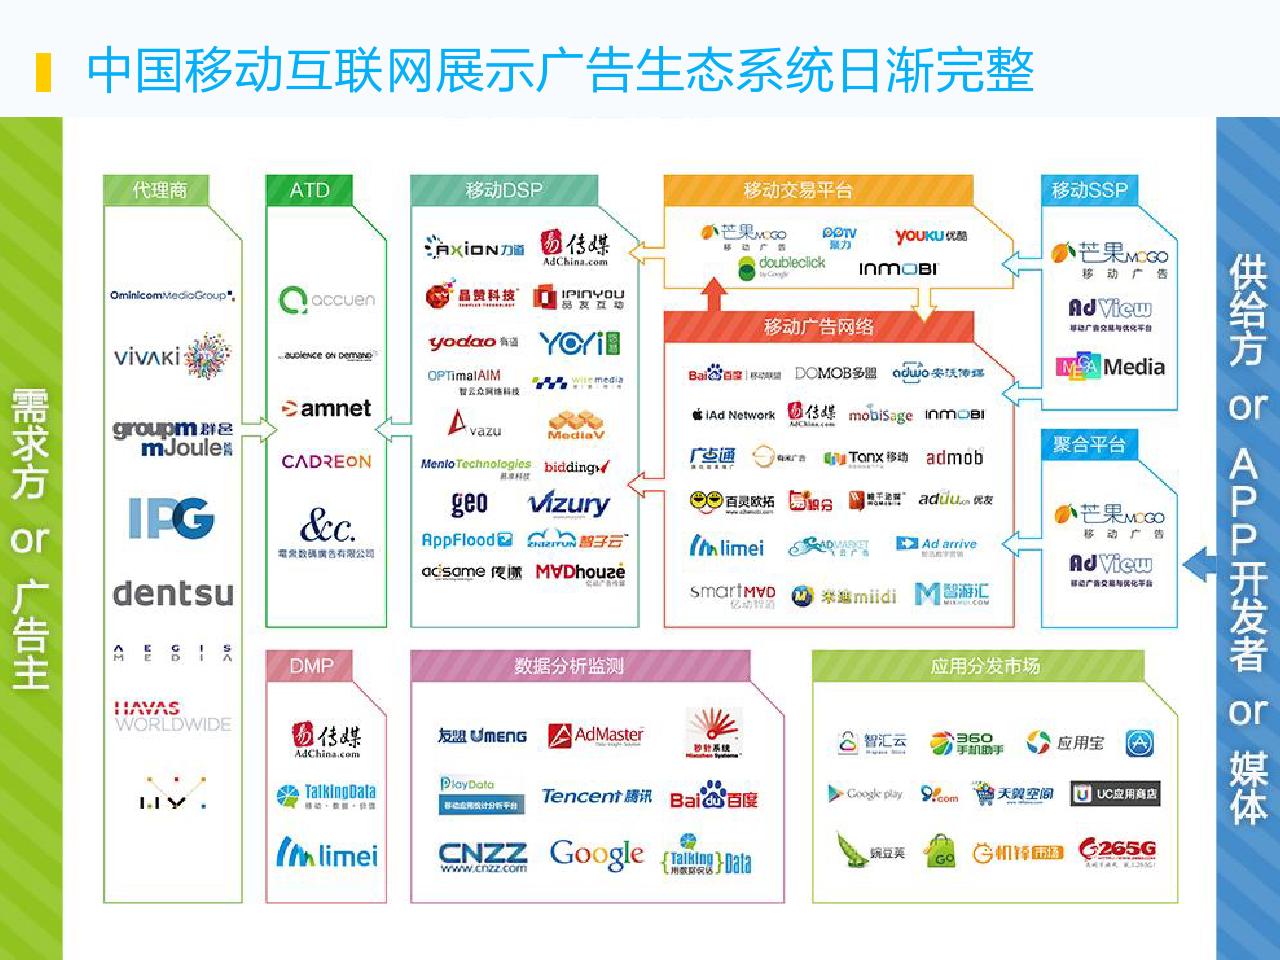 2014上半年中国移动展示广告行业简报_000037